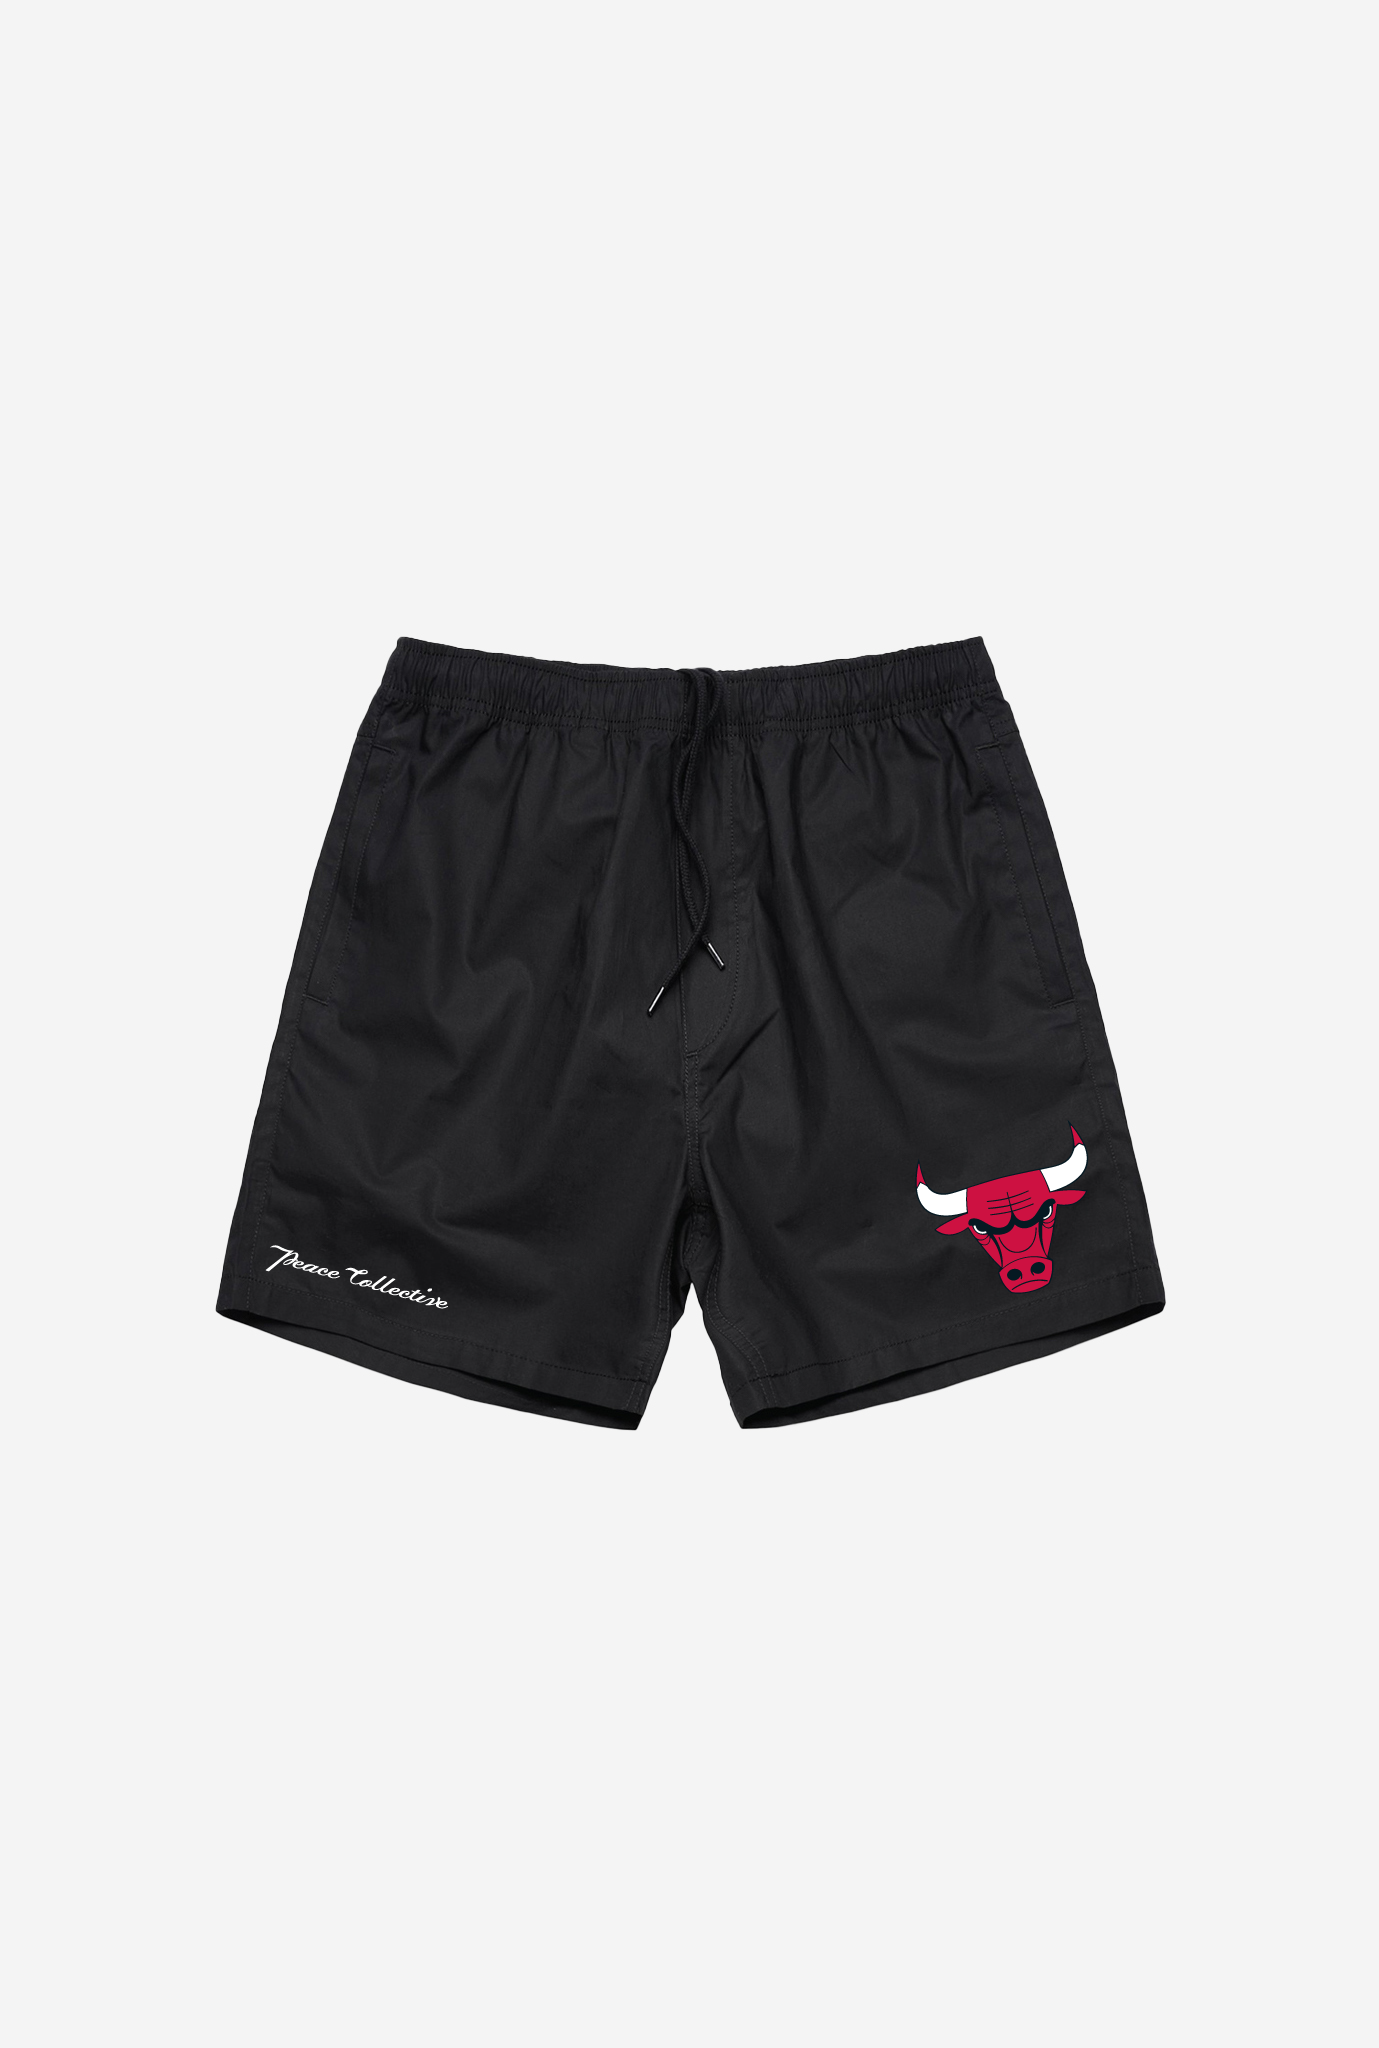 Chicago Bulls Shorts - Black